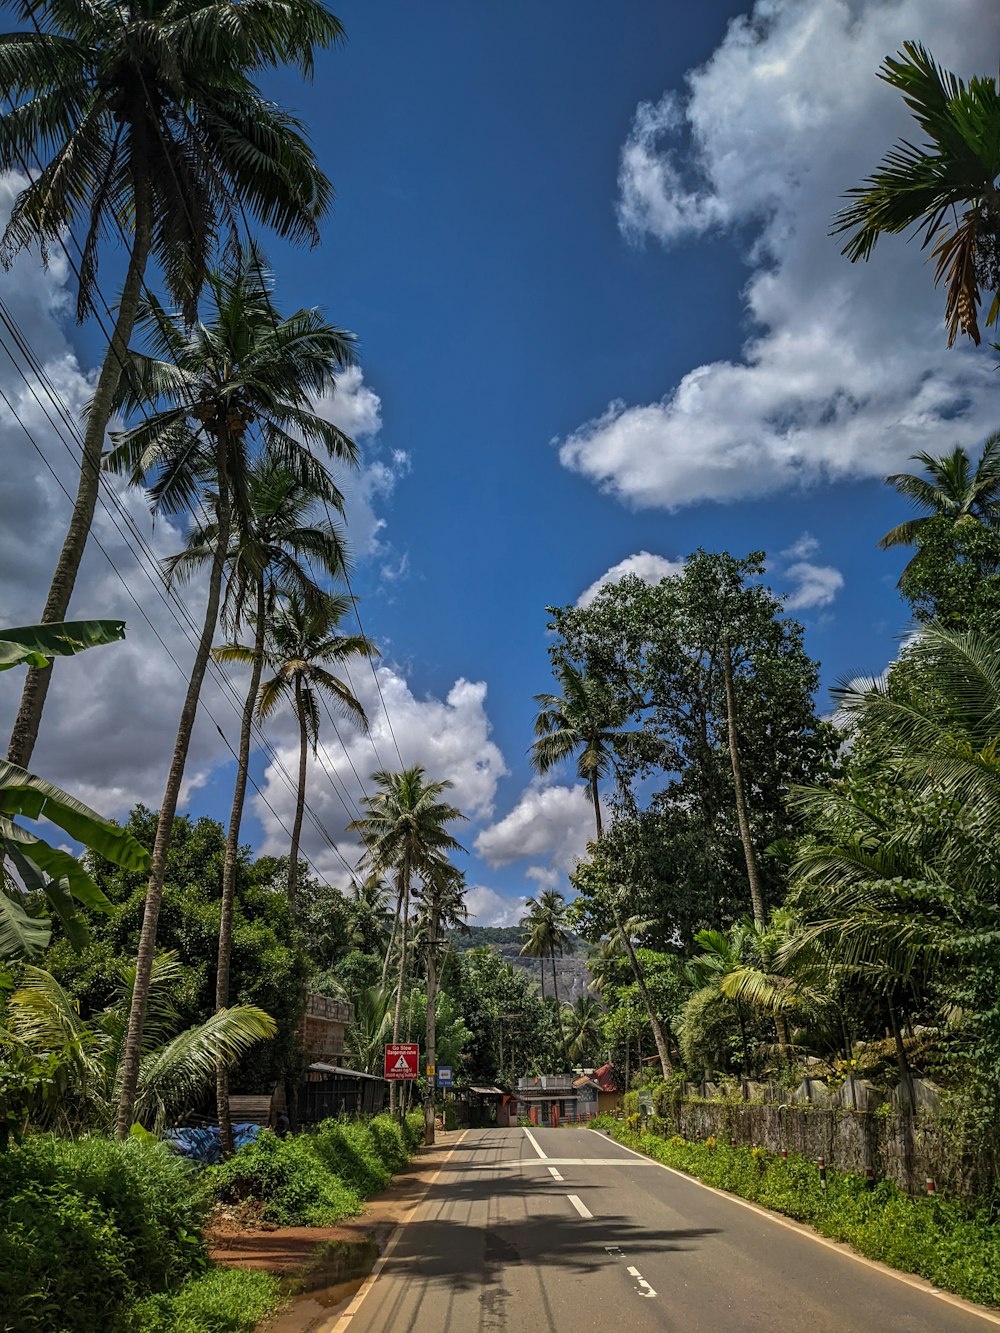 una calle bordeada de palmeras bajo un cielo azul nublado